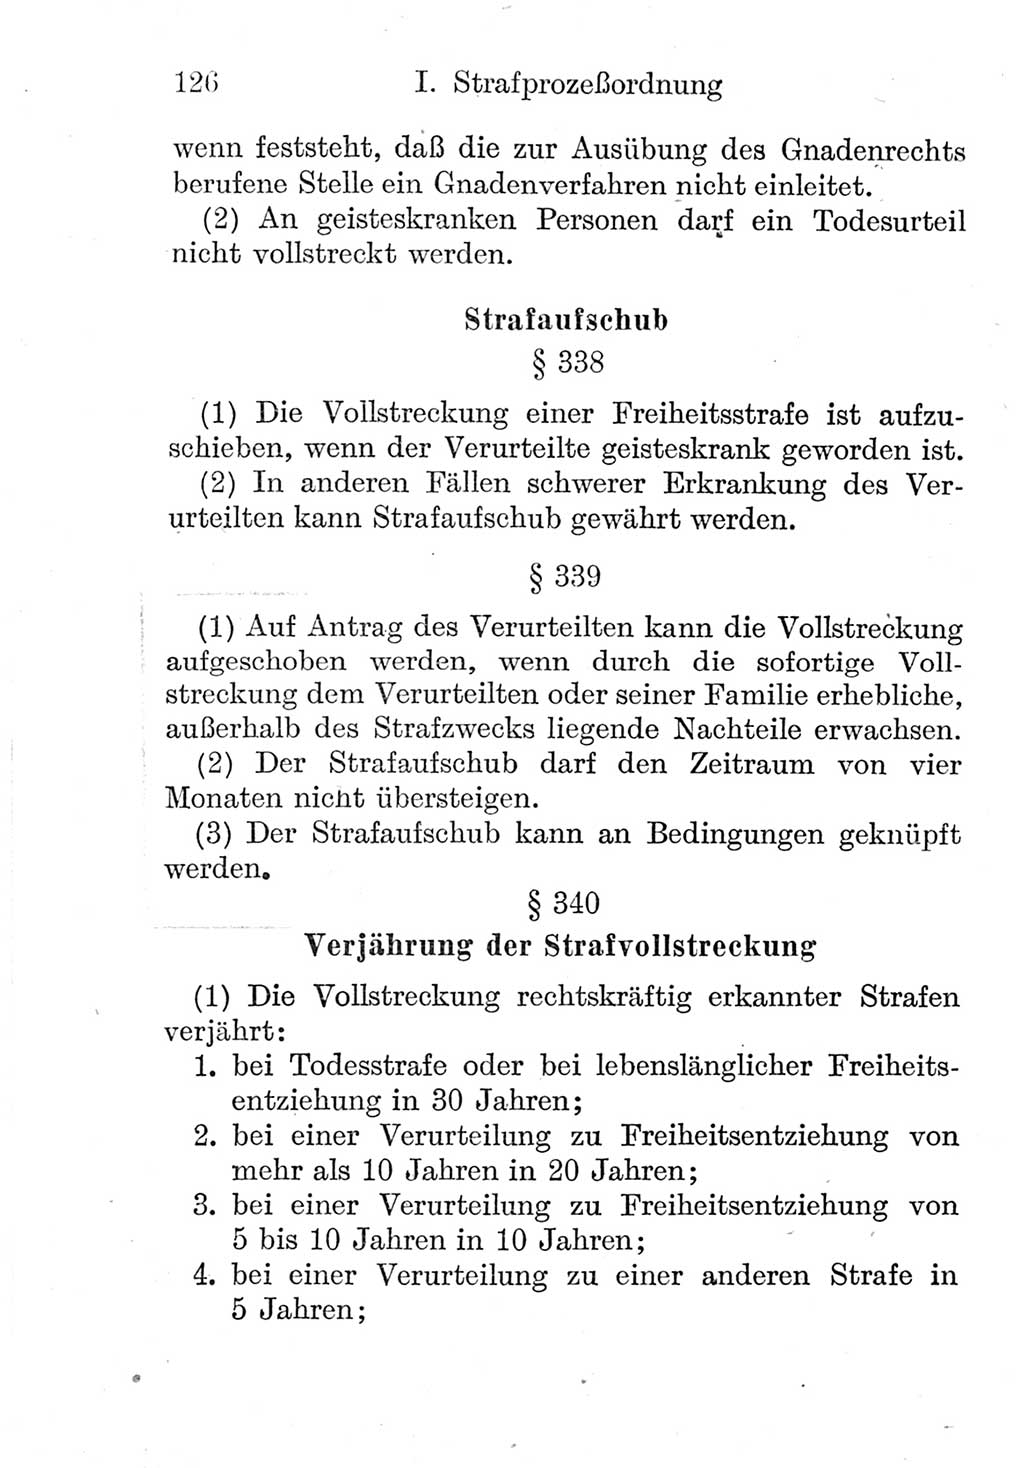 Strafprozeßordnung (StPO), Gerichtsverfassungsgesetz (GVG), Staatsanwaltsgesetz (StAG) und Jugendgerichtsgesetz (JGG) [Deutsche Demokratische Republik (DDR)] 1952, Seite 126 (StPO GVG StAG JGG DDR 1952, S. 126)